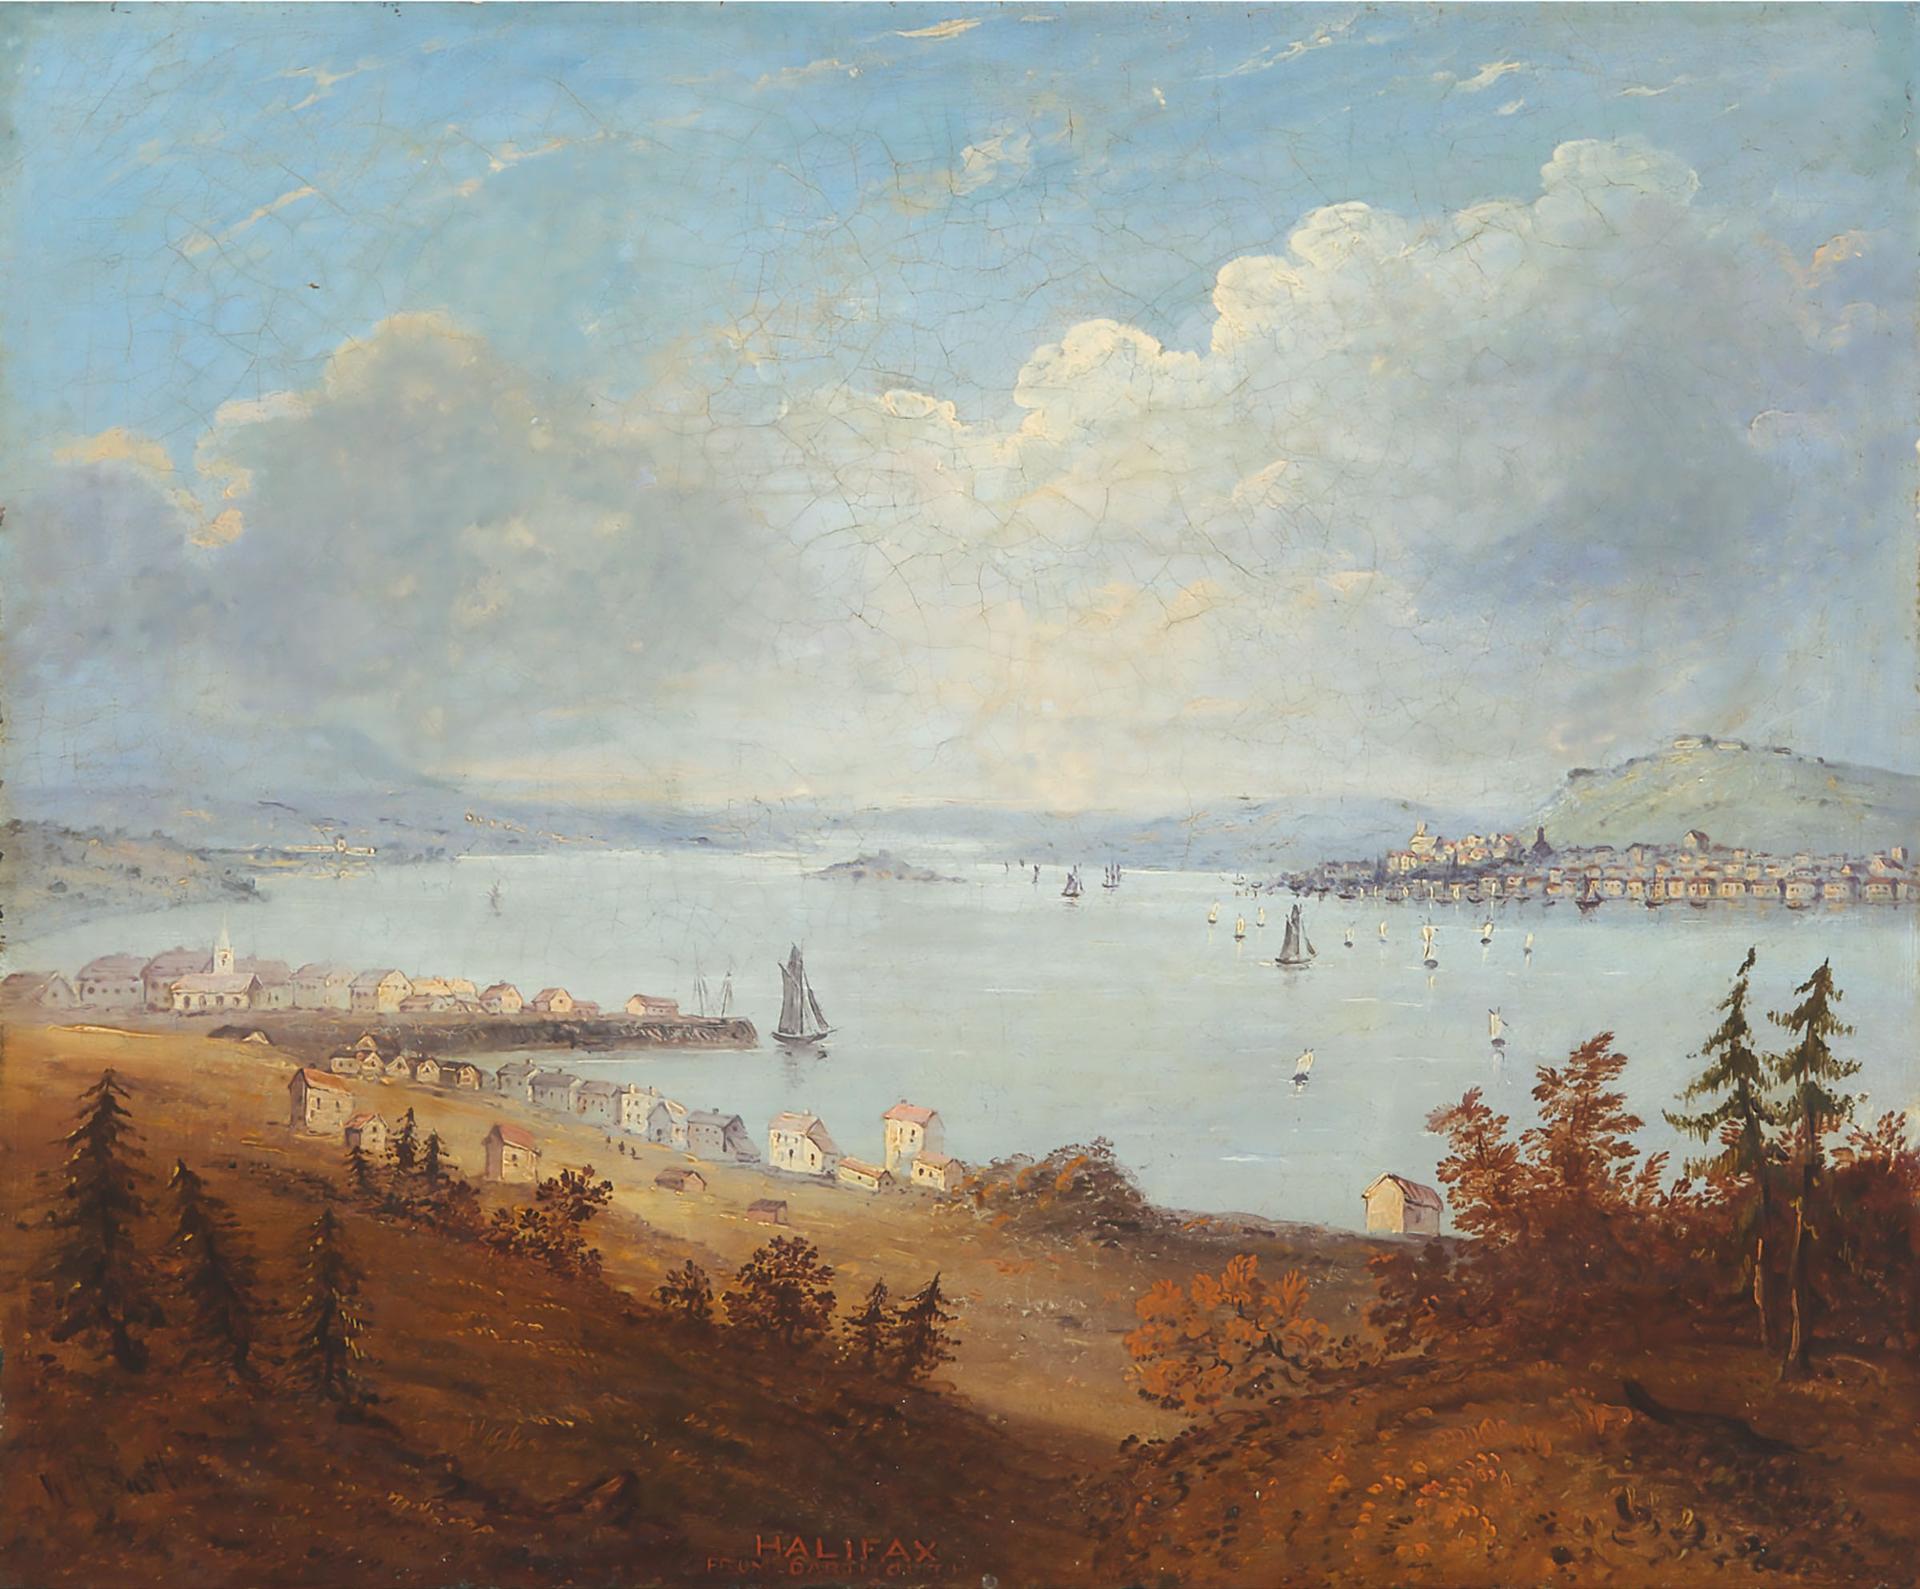 William Henry Bartlett (1809-1854) - Halifax, From Dartmouth